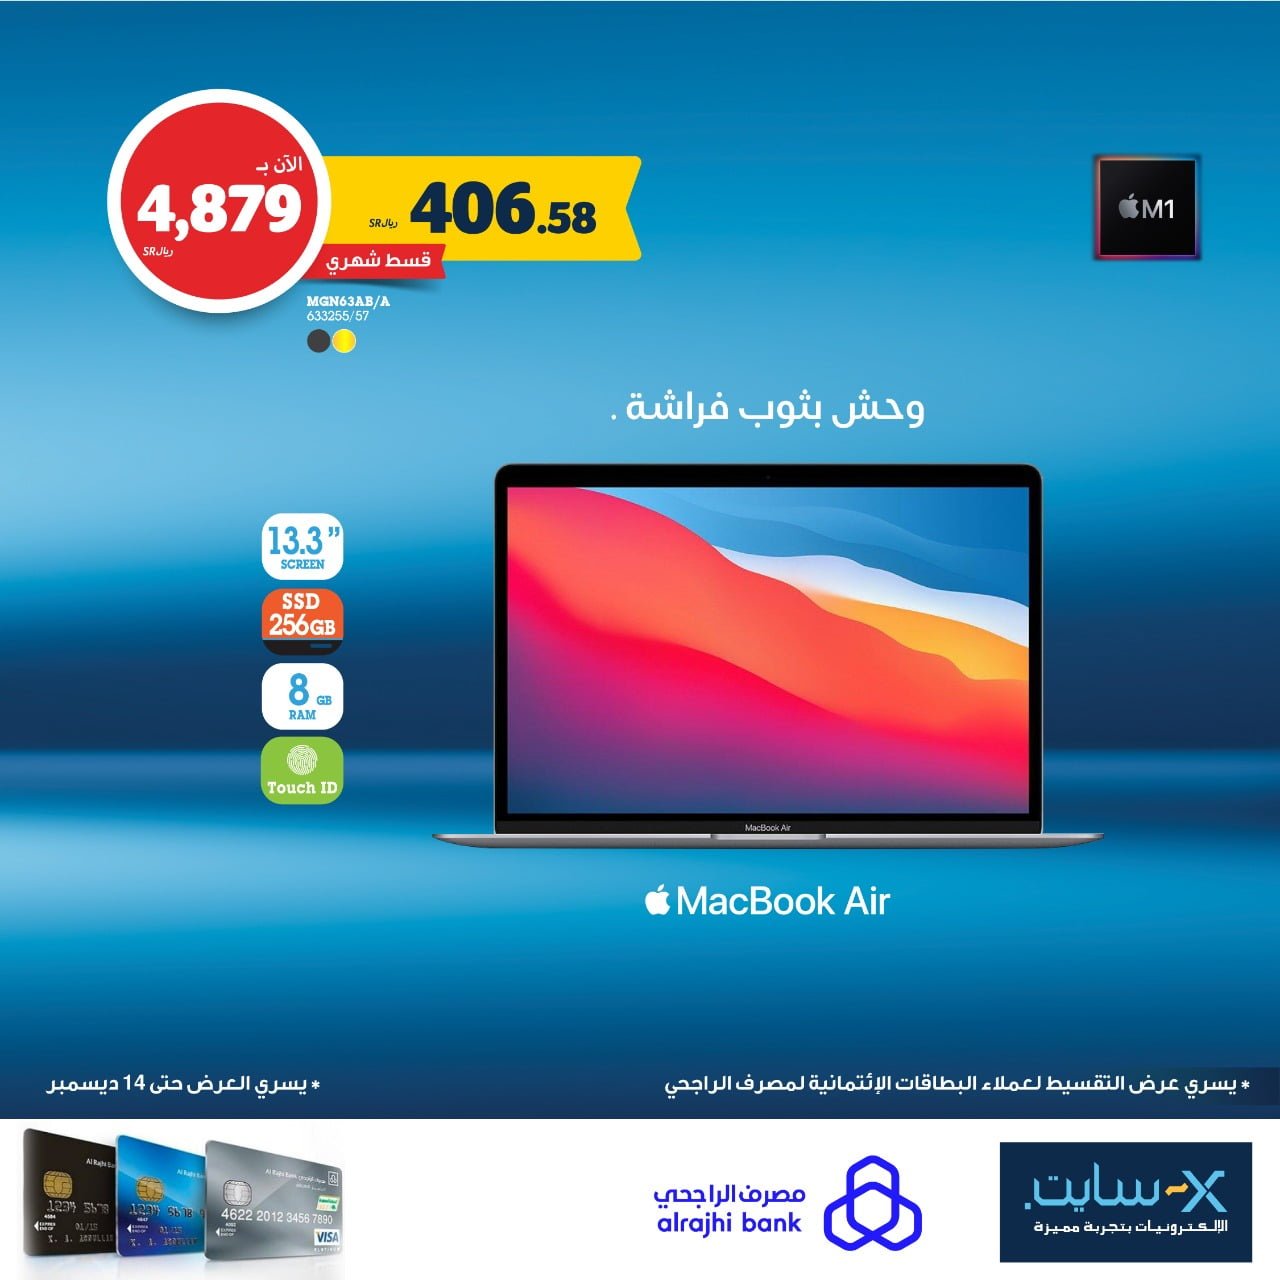 265621942 5277560722259672 1808580735516828544 n - اسعار أجهزة iPad و MacBook في اكسايت السعودية